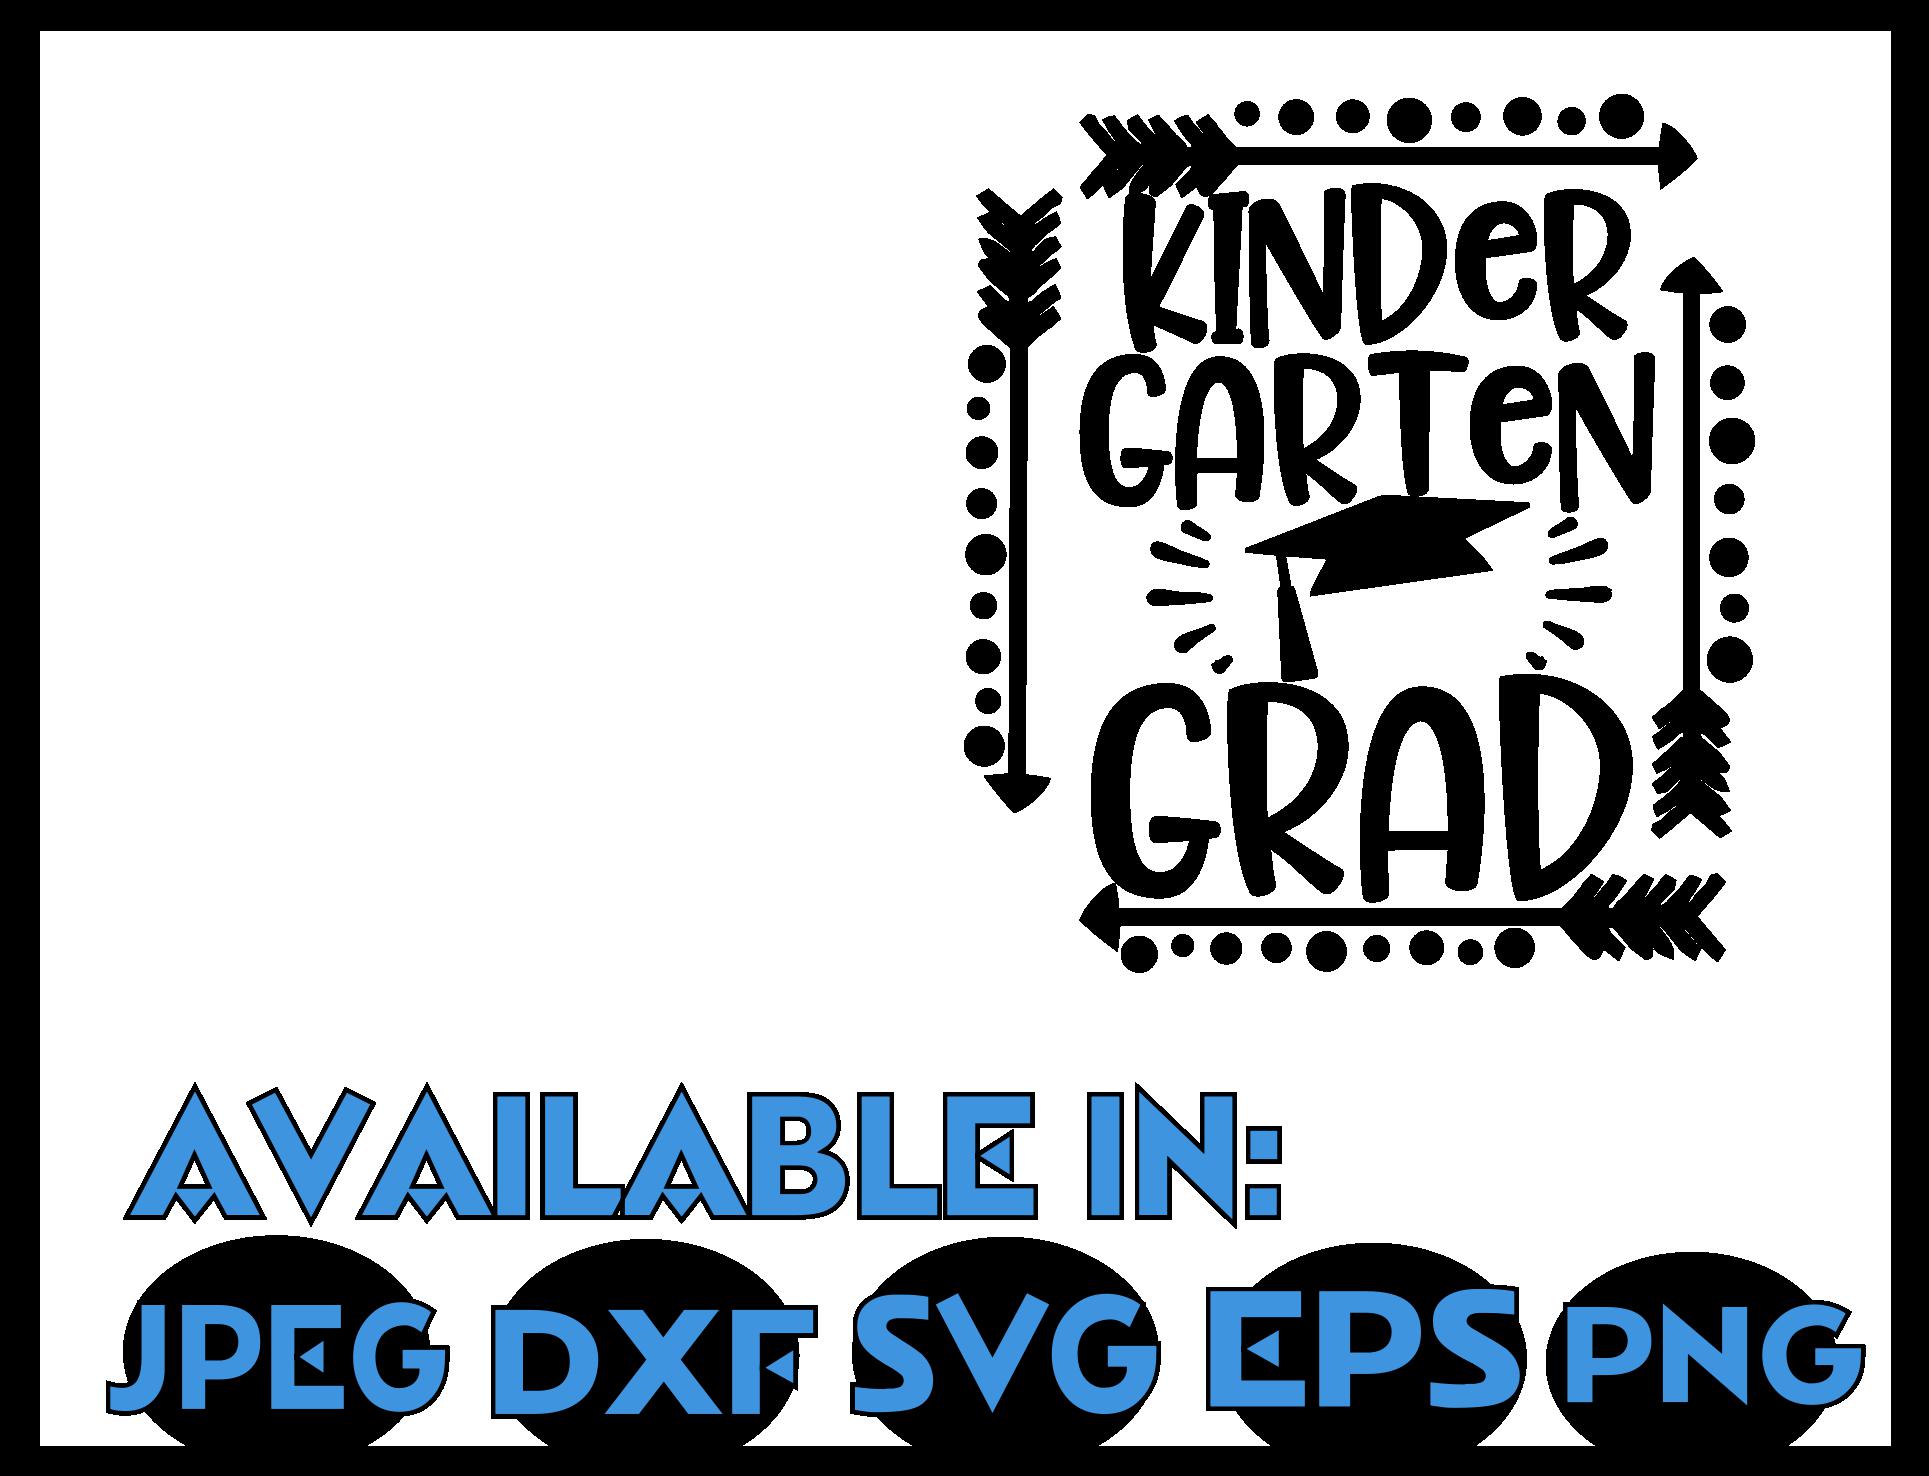 Free Free Kindergarten Graduation Svg 327 SVG PNG EPS DXF File